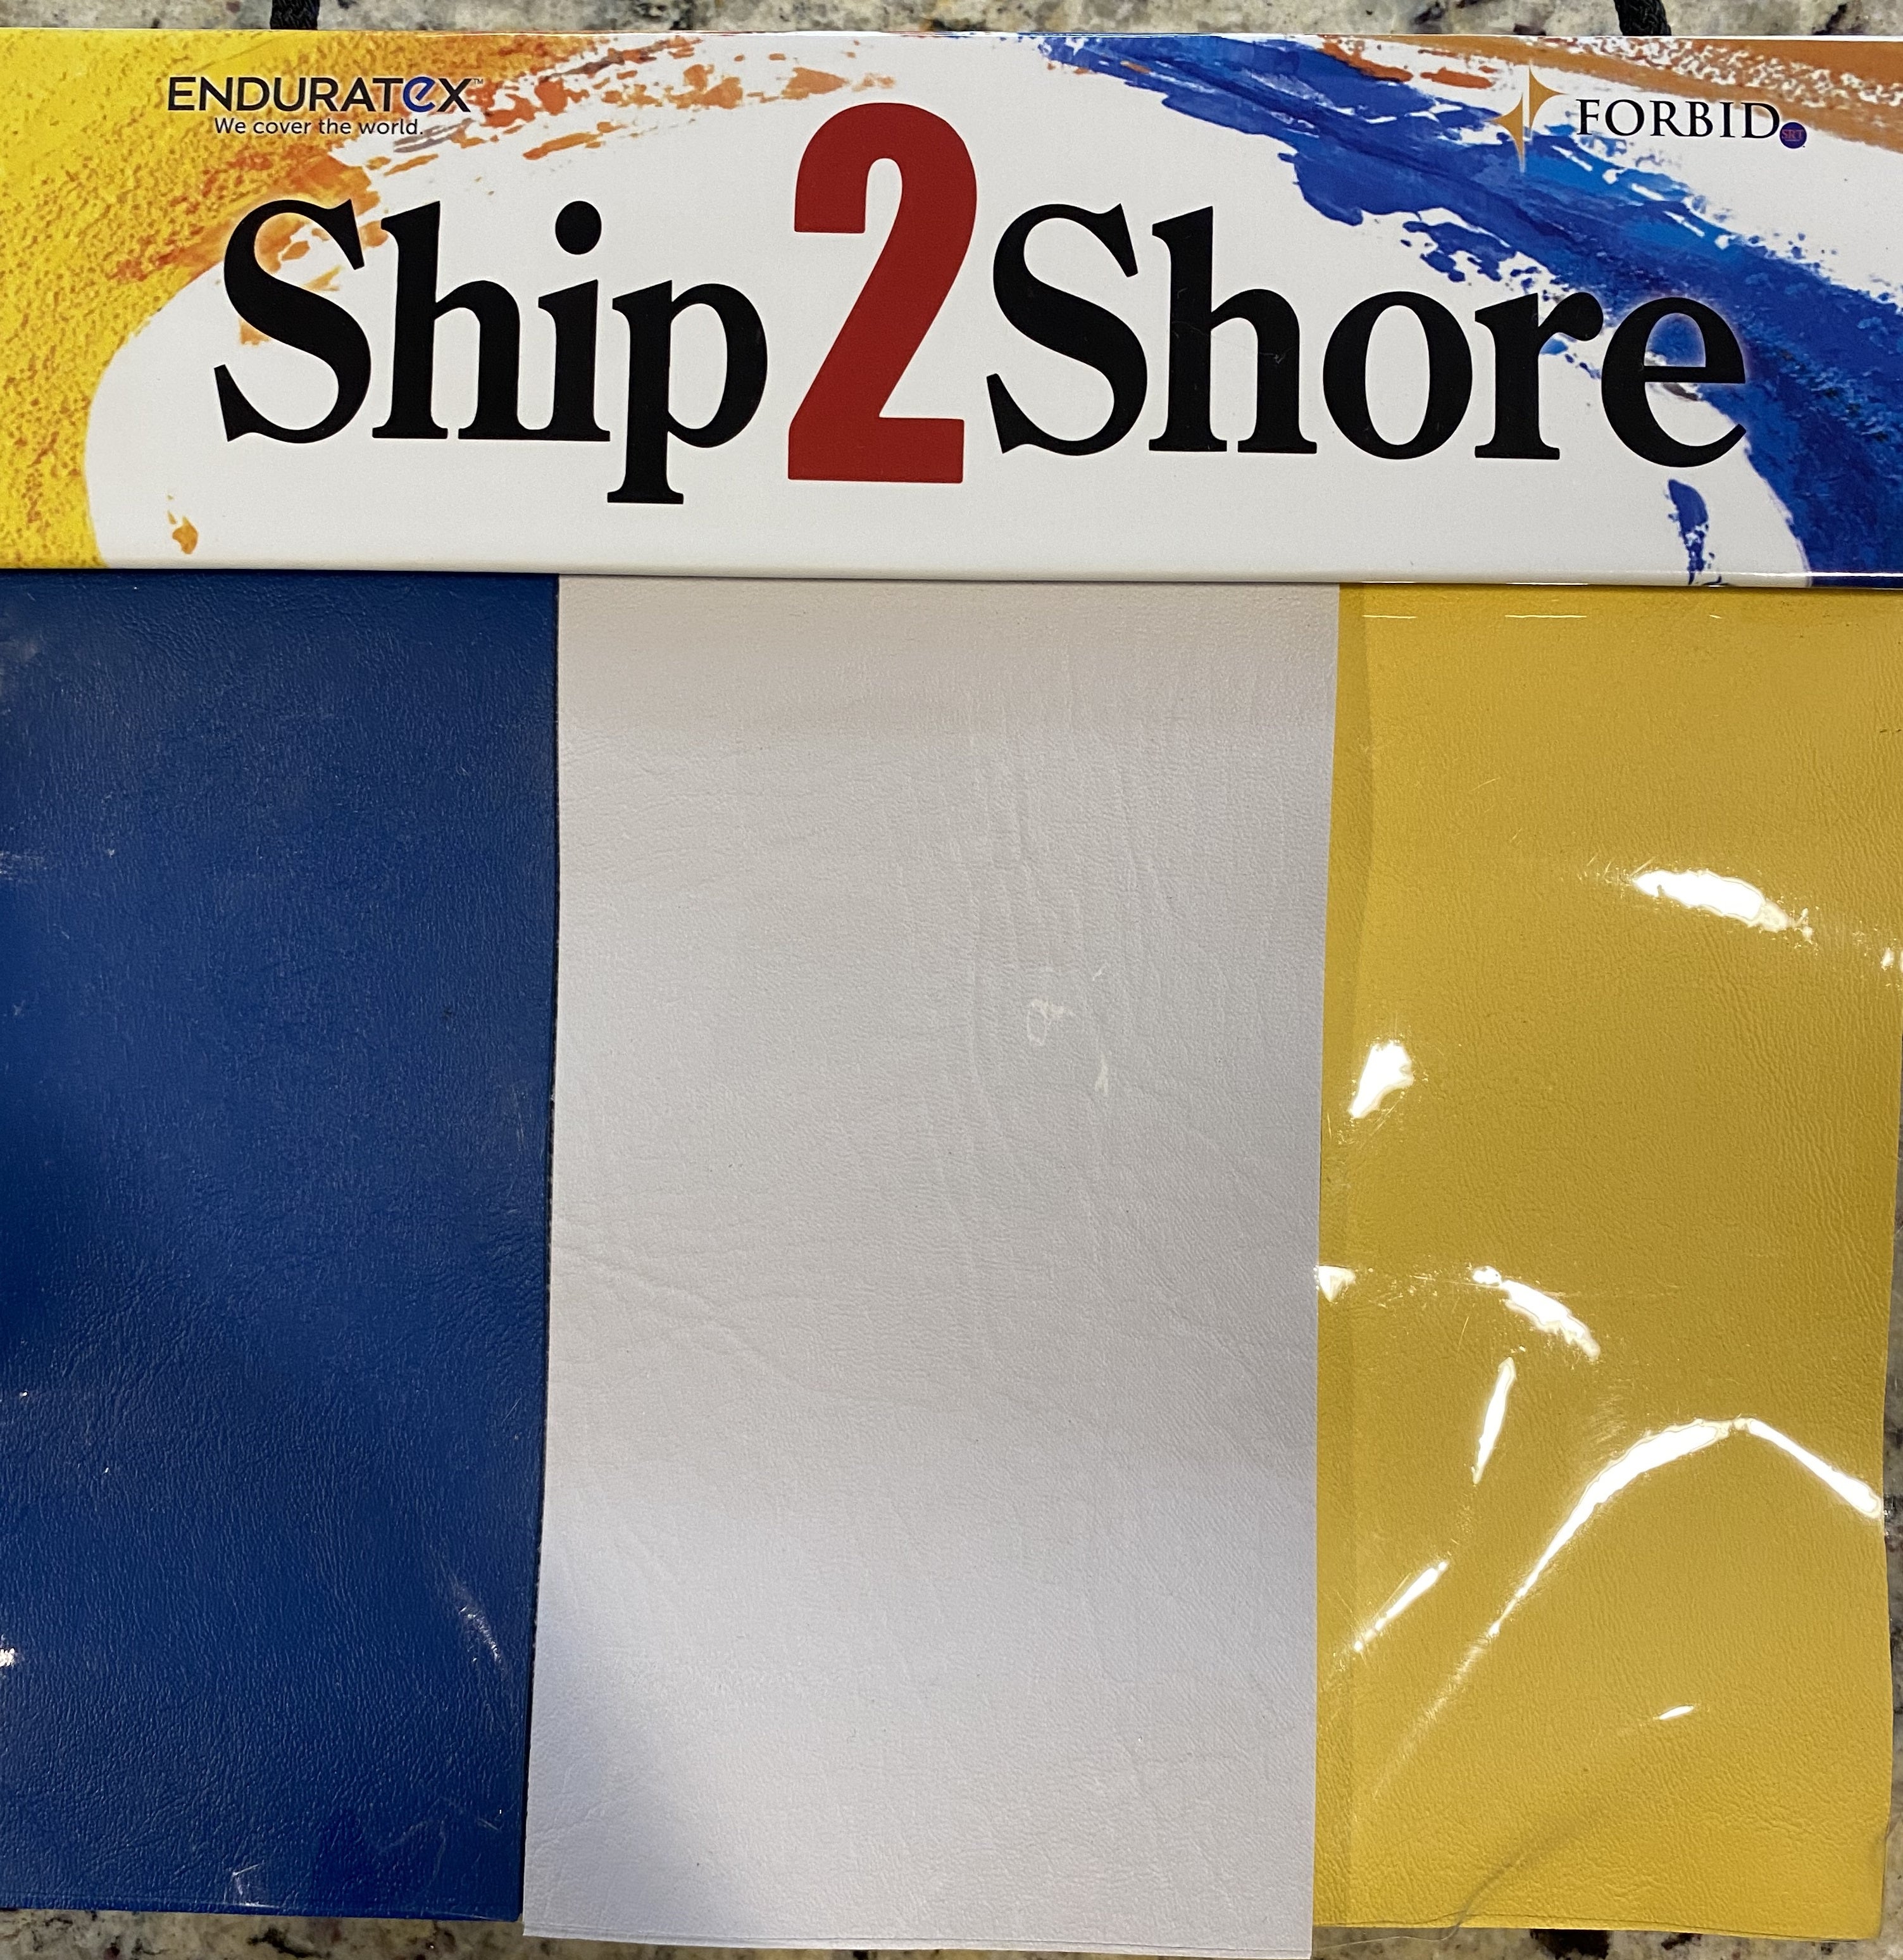 Ship2Shore